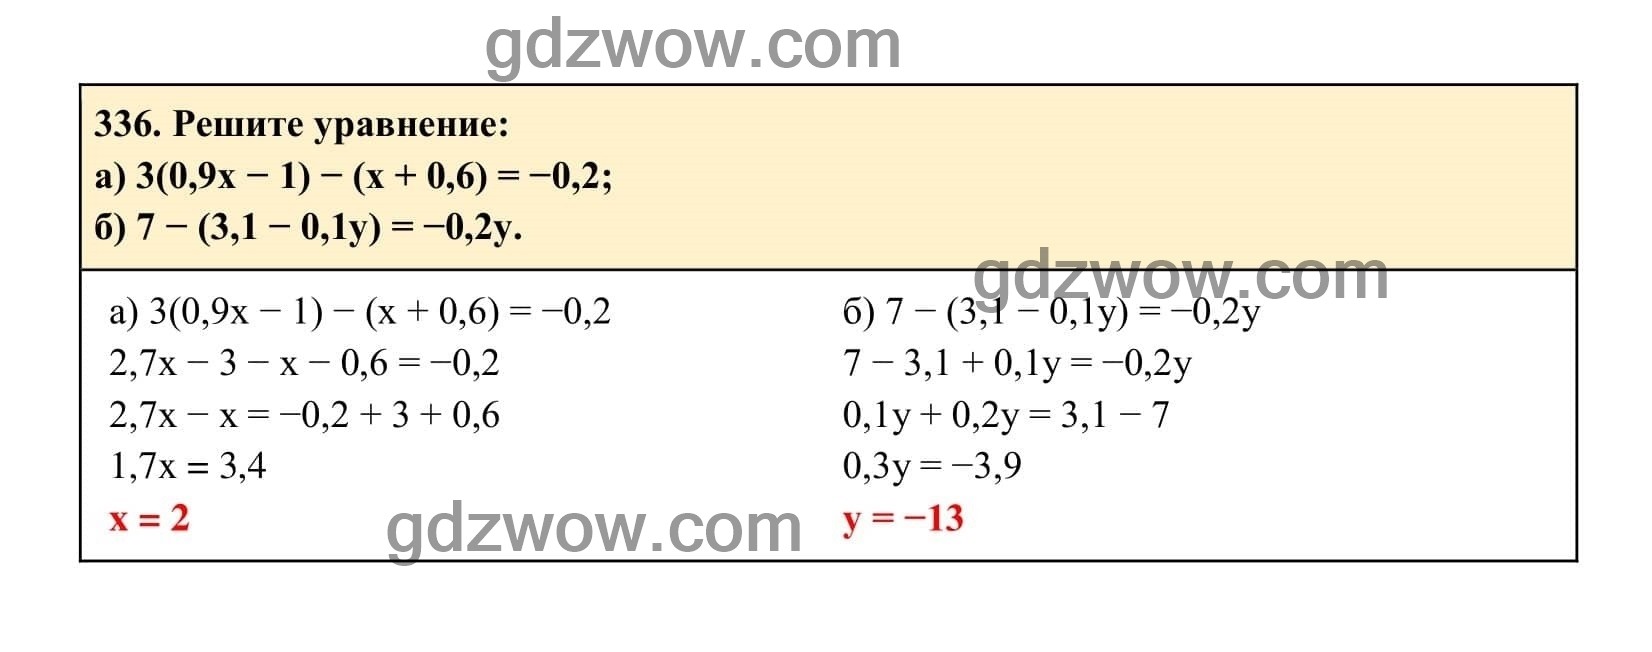 Упражнение 336 - ГДЗ по Алгебре 7 класс Учебник Макарычев (решебник) - GDZwow